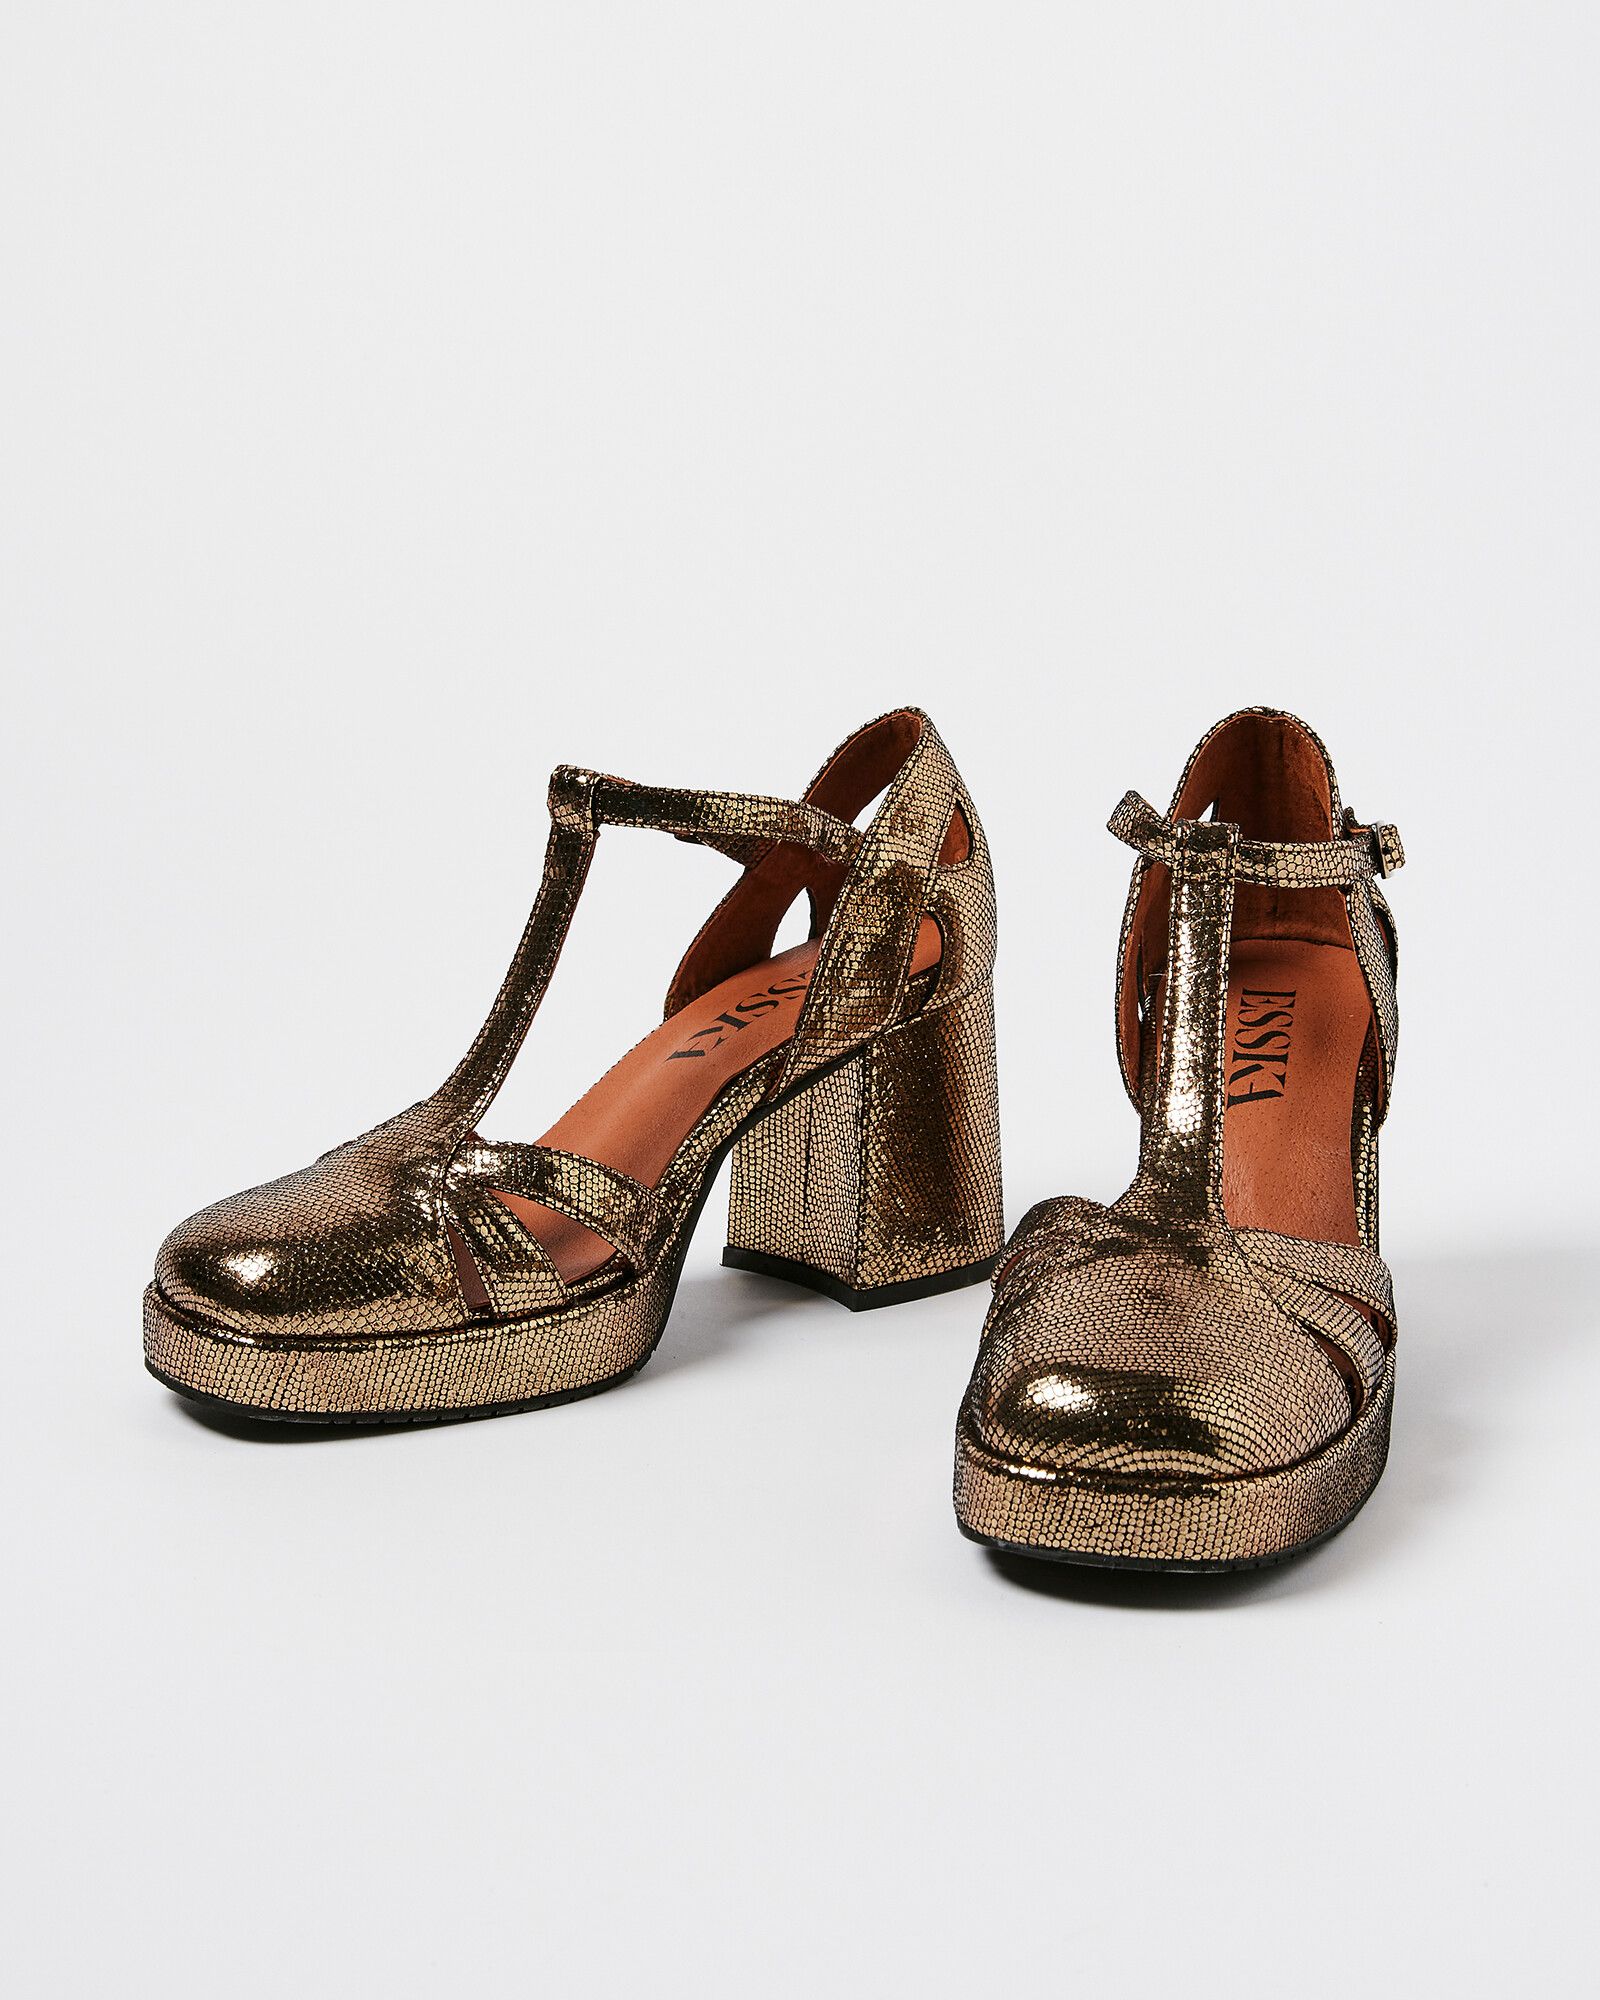 Esska Chaza Onyx Gold Leather Heeled Sandals | Oliver Bonas